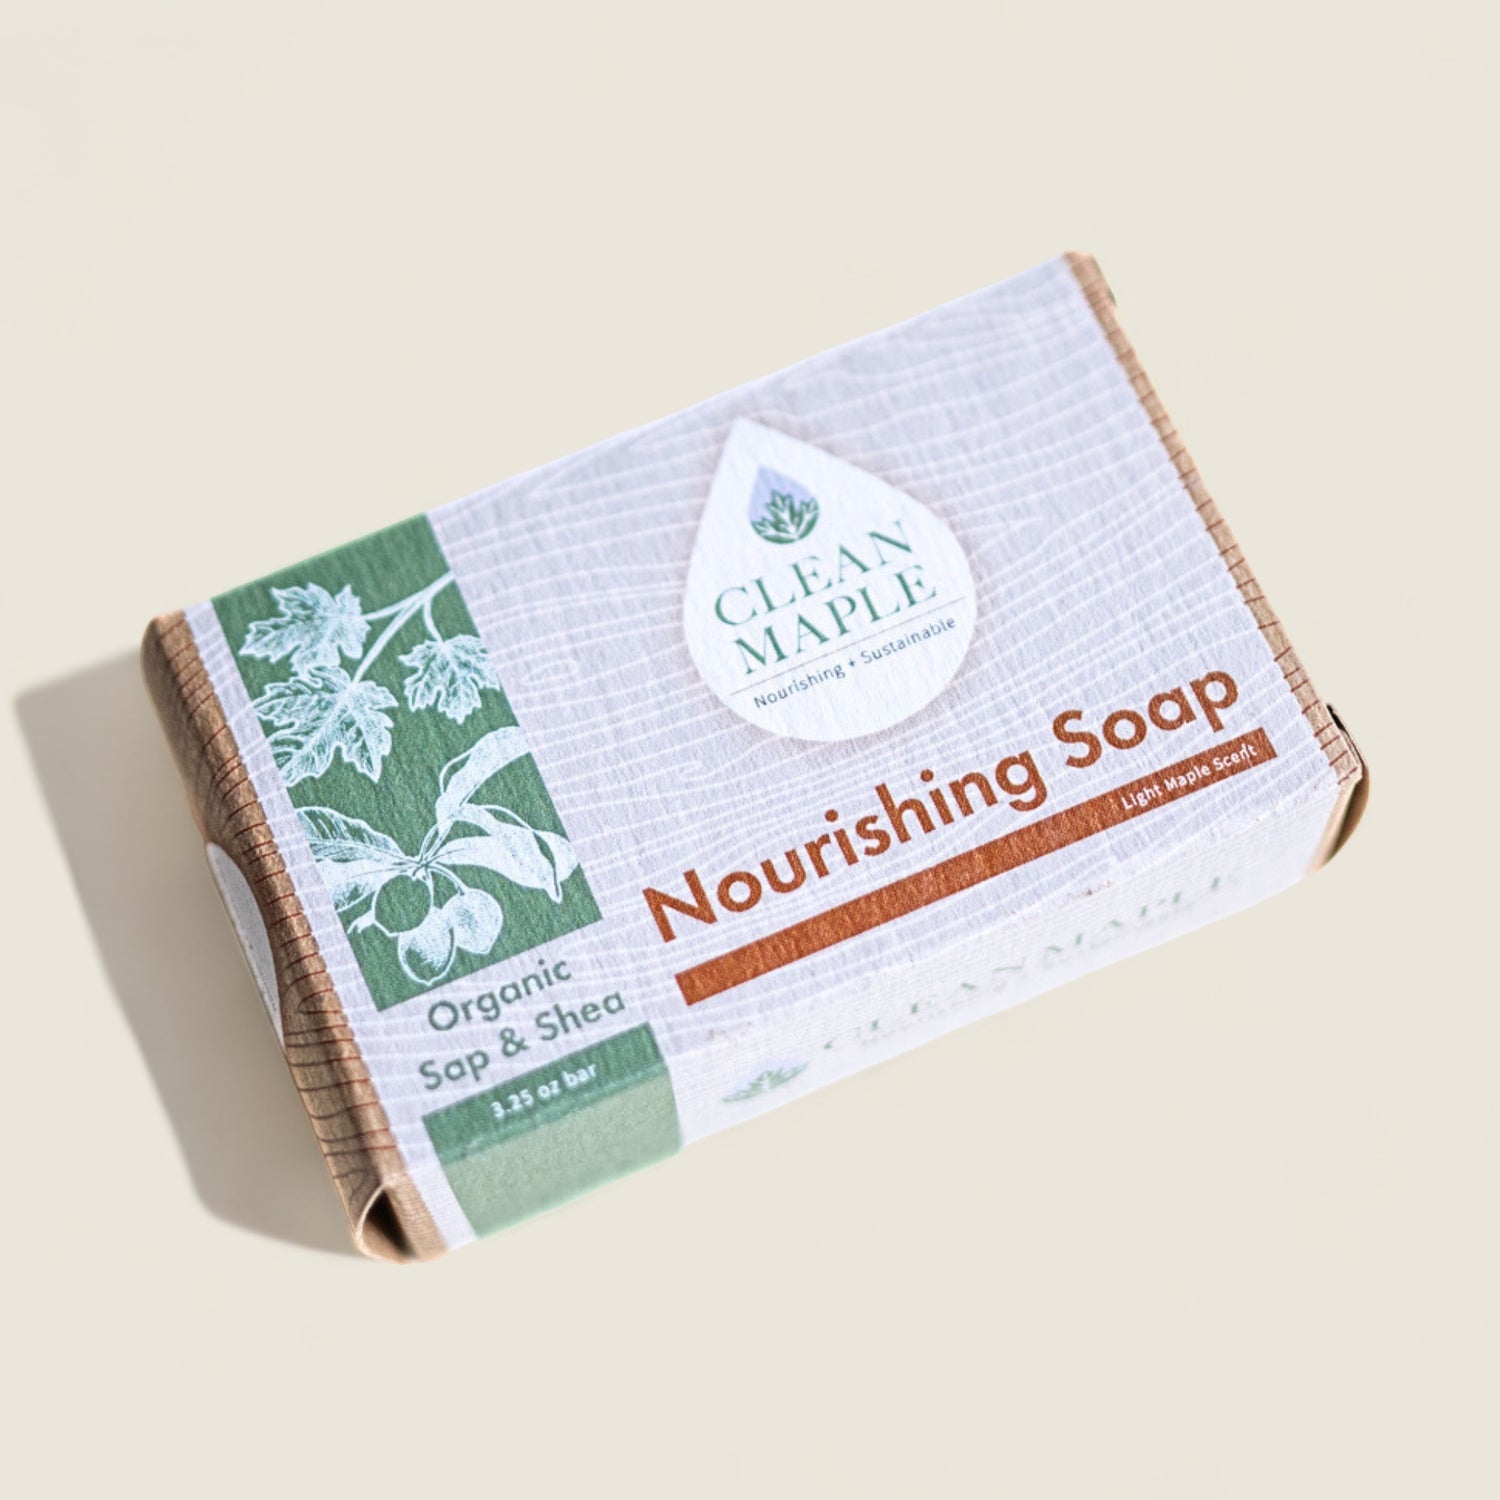 Organic Sap and Shea Nourishing Soap